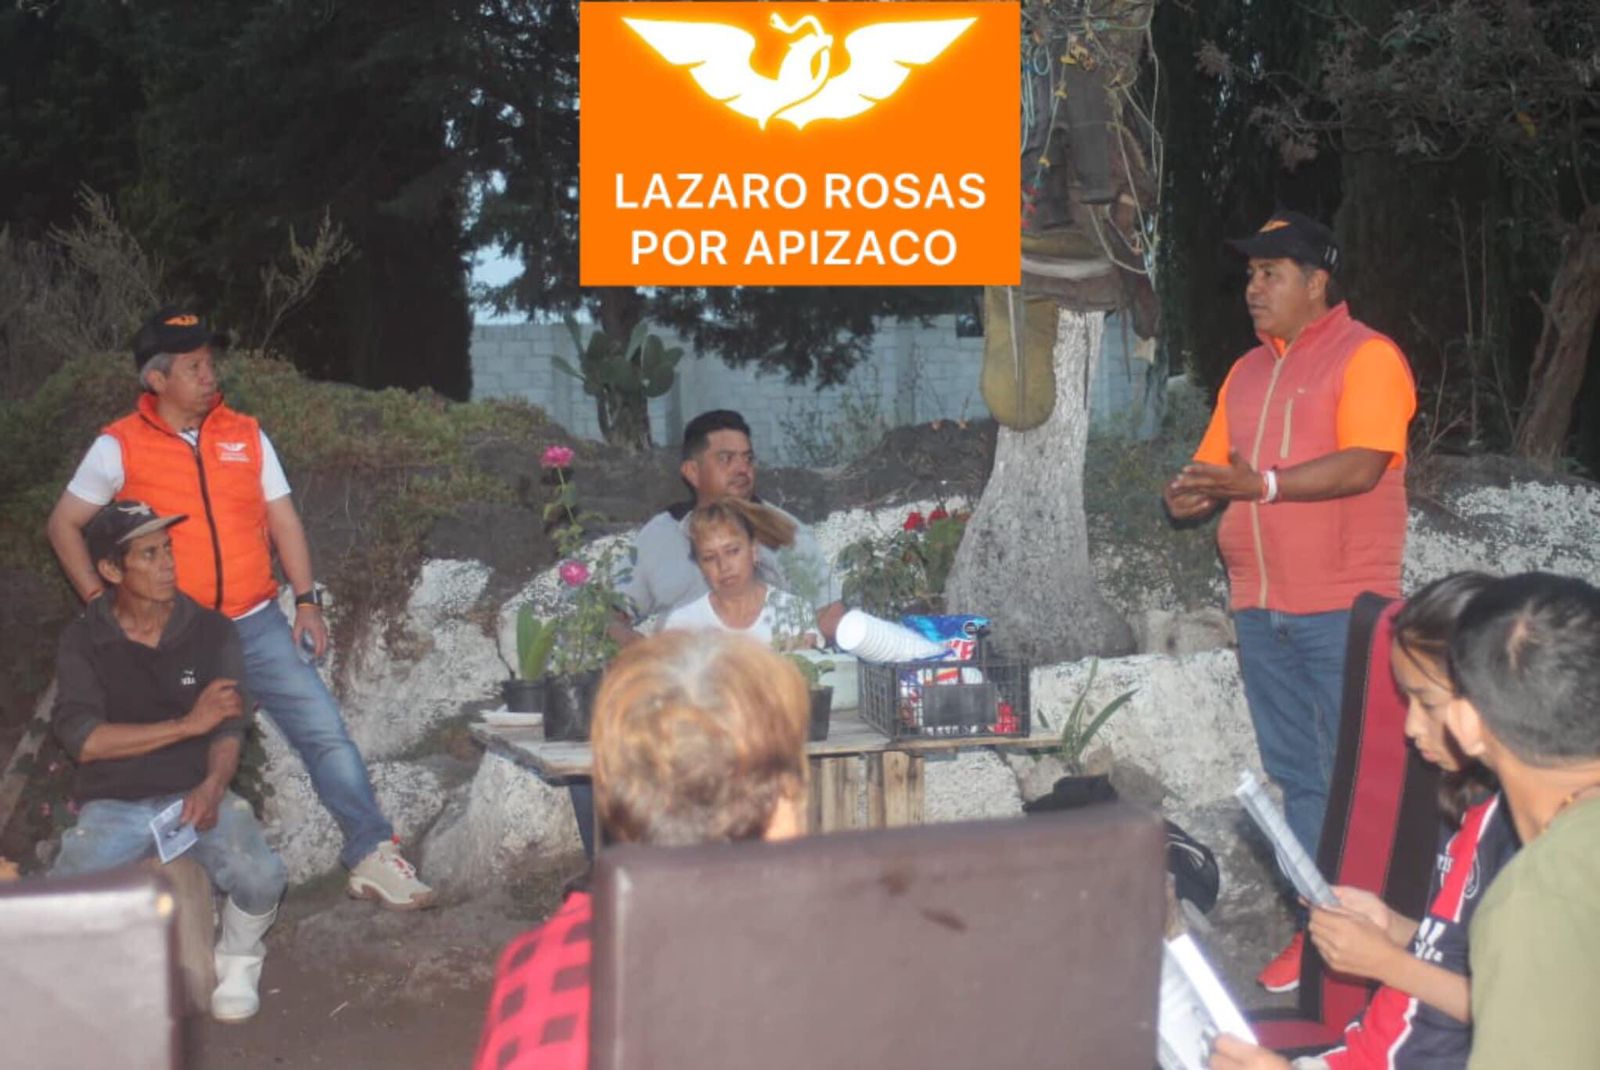 Lázaro Rosas escucha las necesidades de Apizaco y plantea respuestas